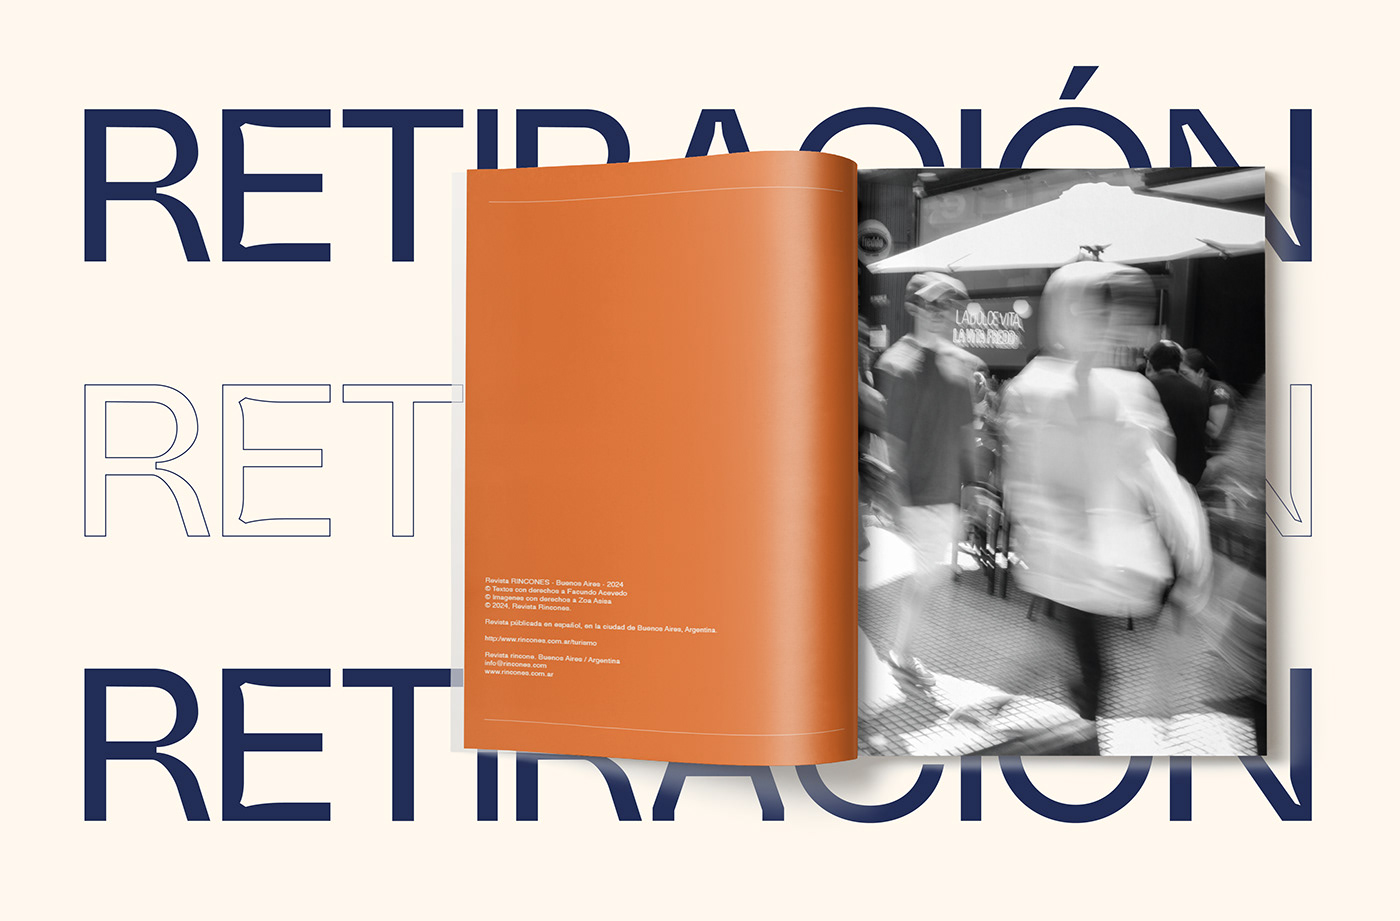 Fotografia tipografia editorial diseño gráfico design magazine revista fotografia publicitaria diseño grafico